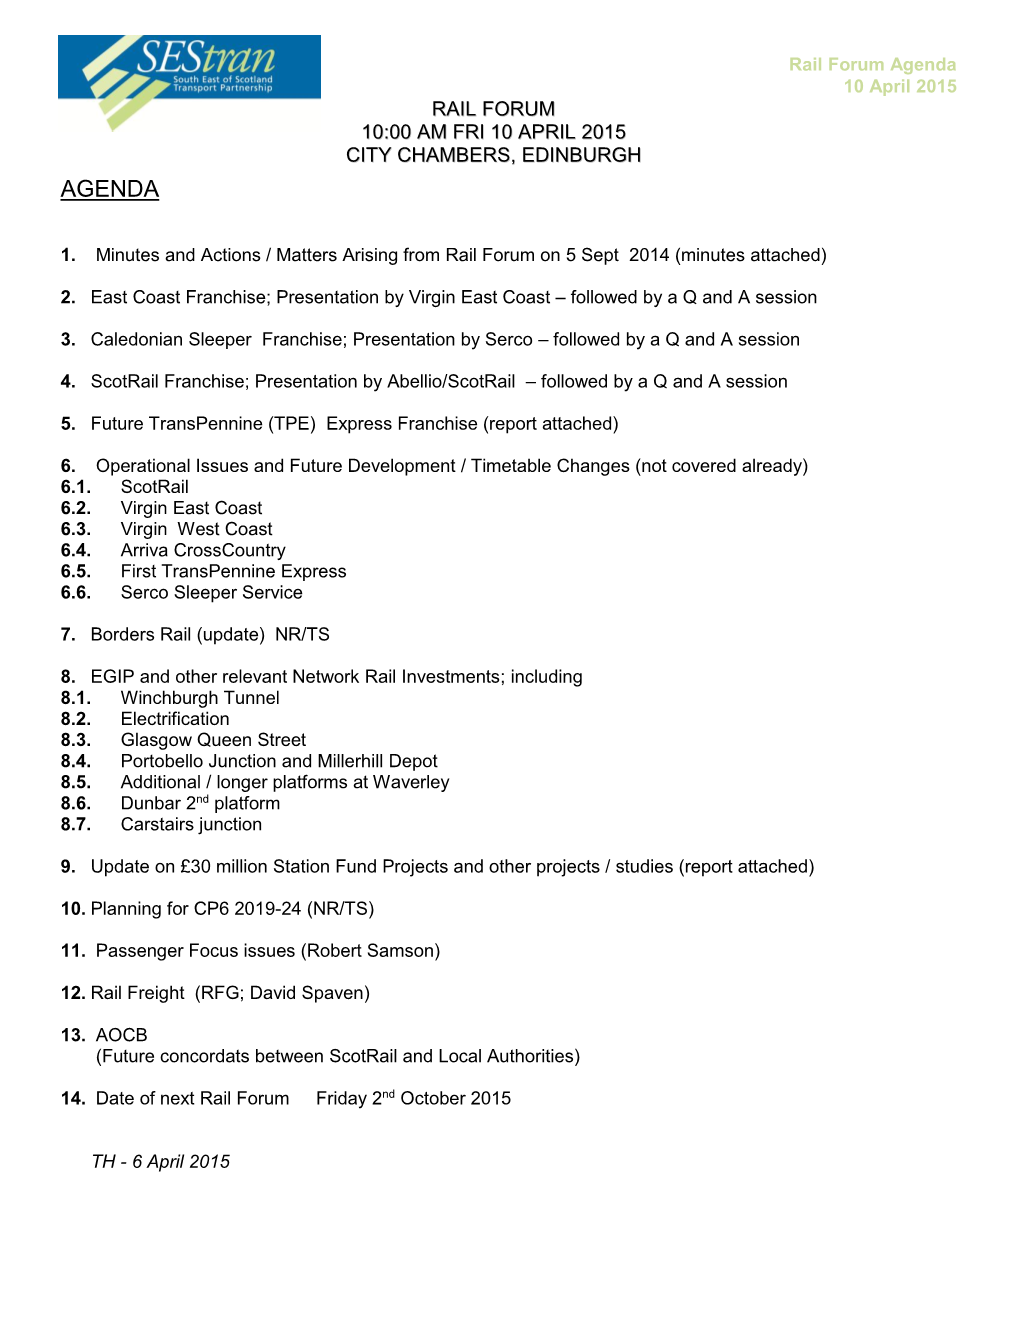 Agenda 10 April 2015 RAIL FORUM